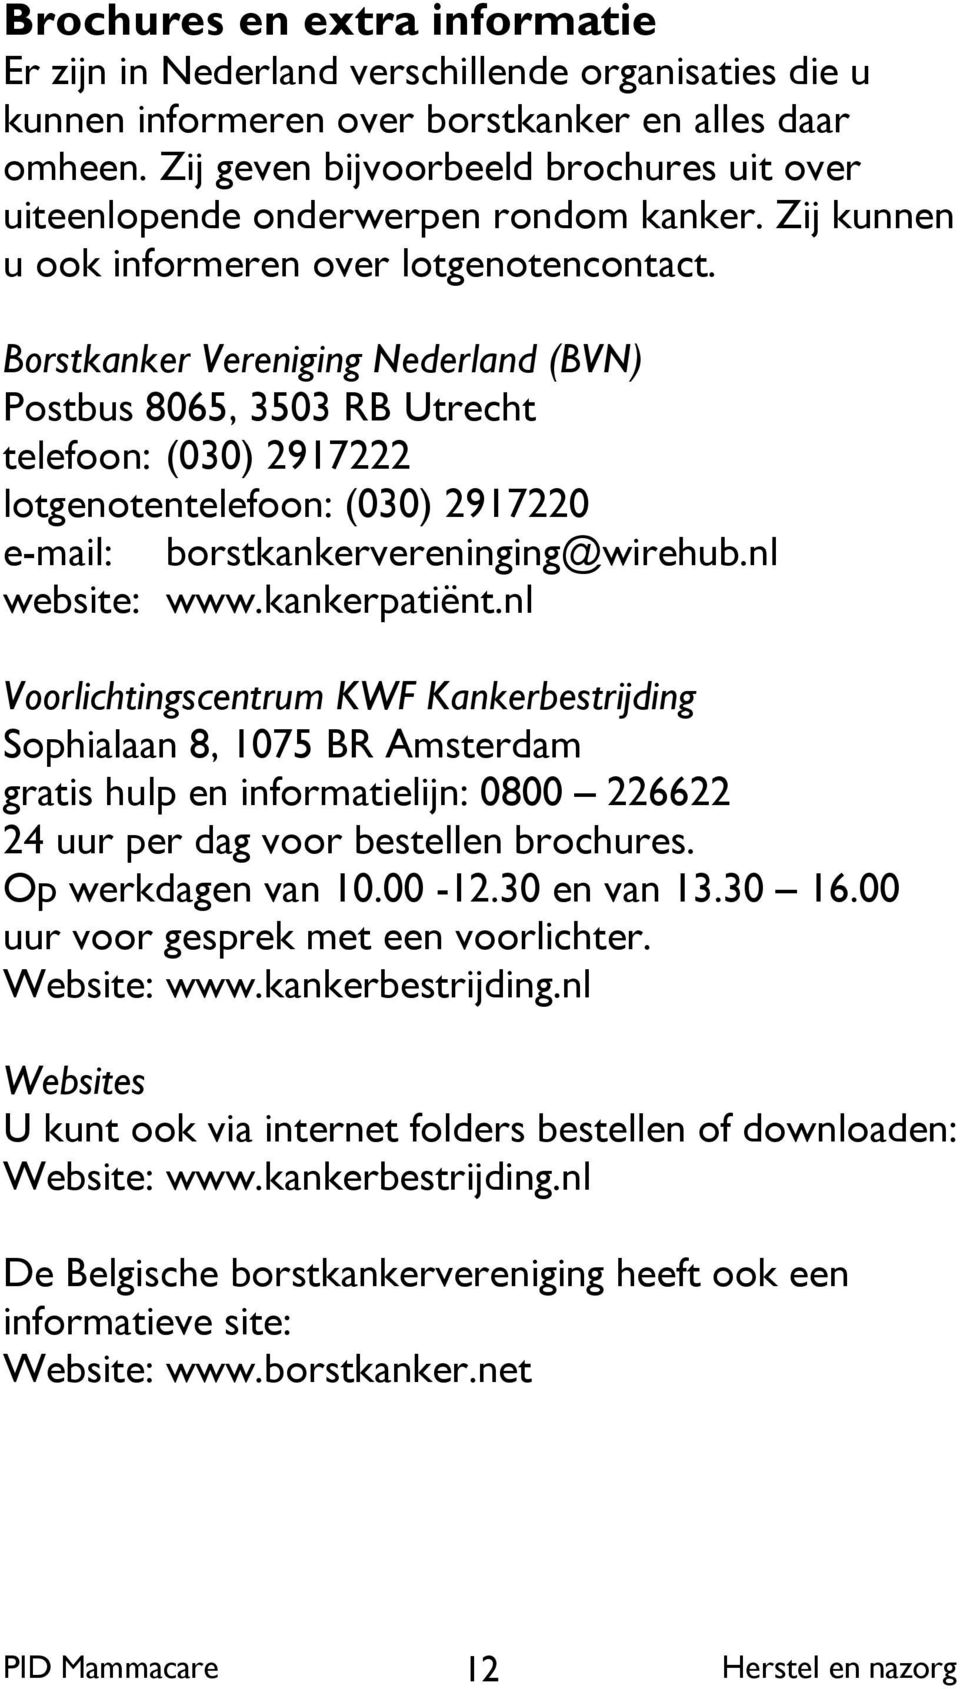 Borstkanker Vereniging Nederland (BVN) Postbus 8065, 3503 RB Utrecht telefoon: (030) 2917222 lotgenotentelefoon: (030) 2917220 e-mail: borstkankervereninging@wirehub.nl website: www.kankerpatiënt.